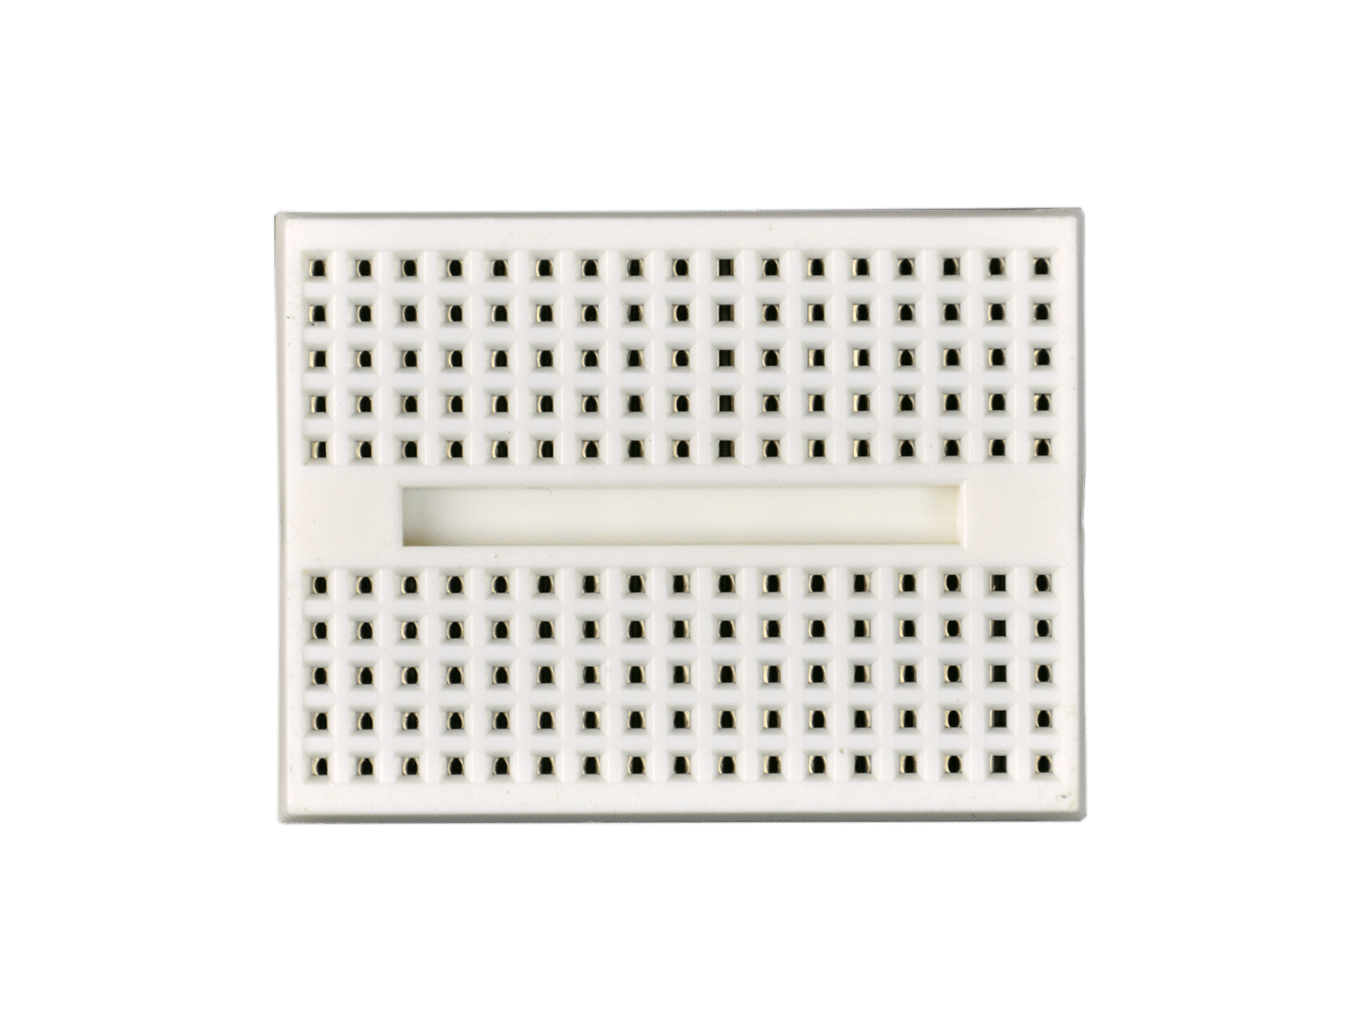 Mini Electronics Breadboard 